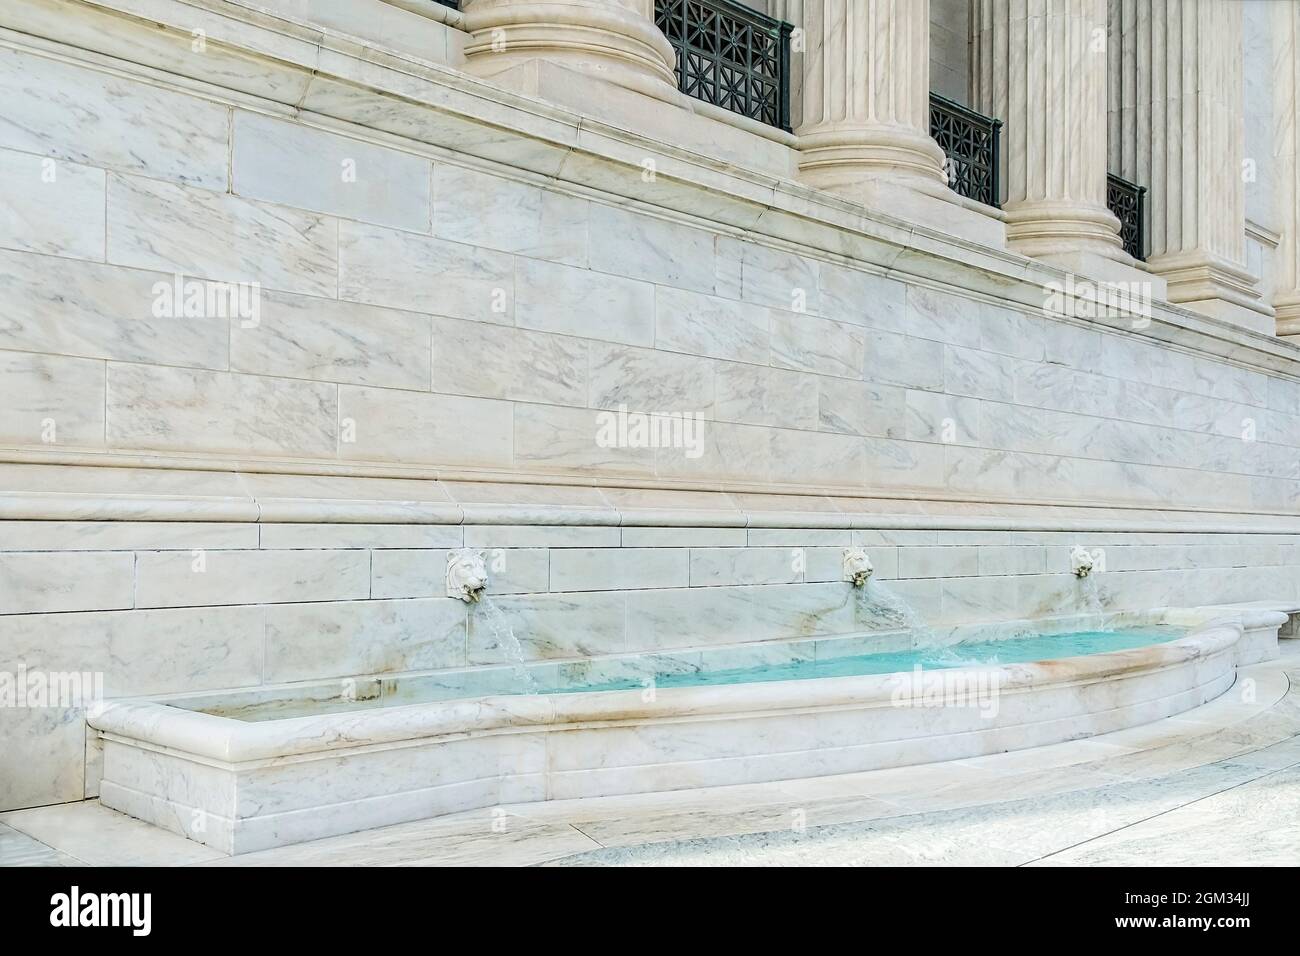 Löwenköpfe dienen in diesem Brunnen am Supreme Court Building als Wasserauslauf. Stockfoto